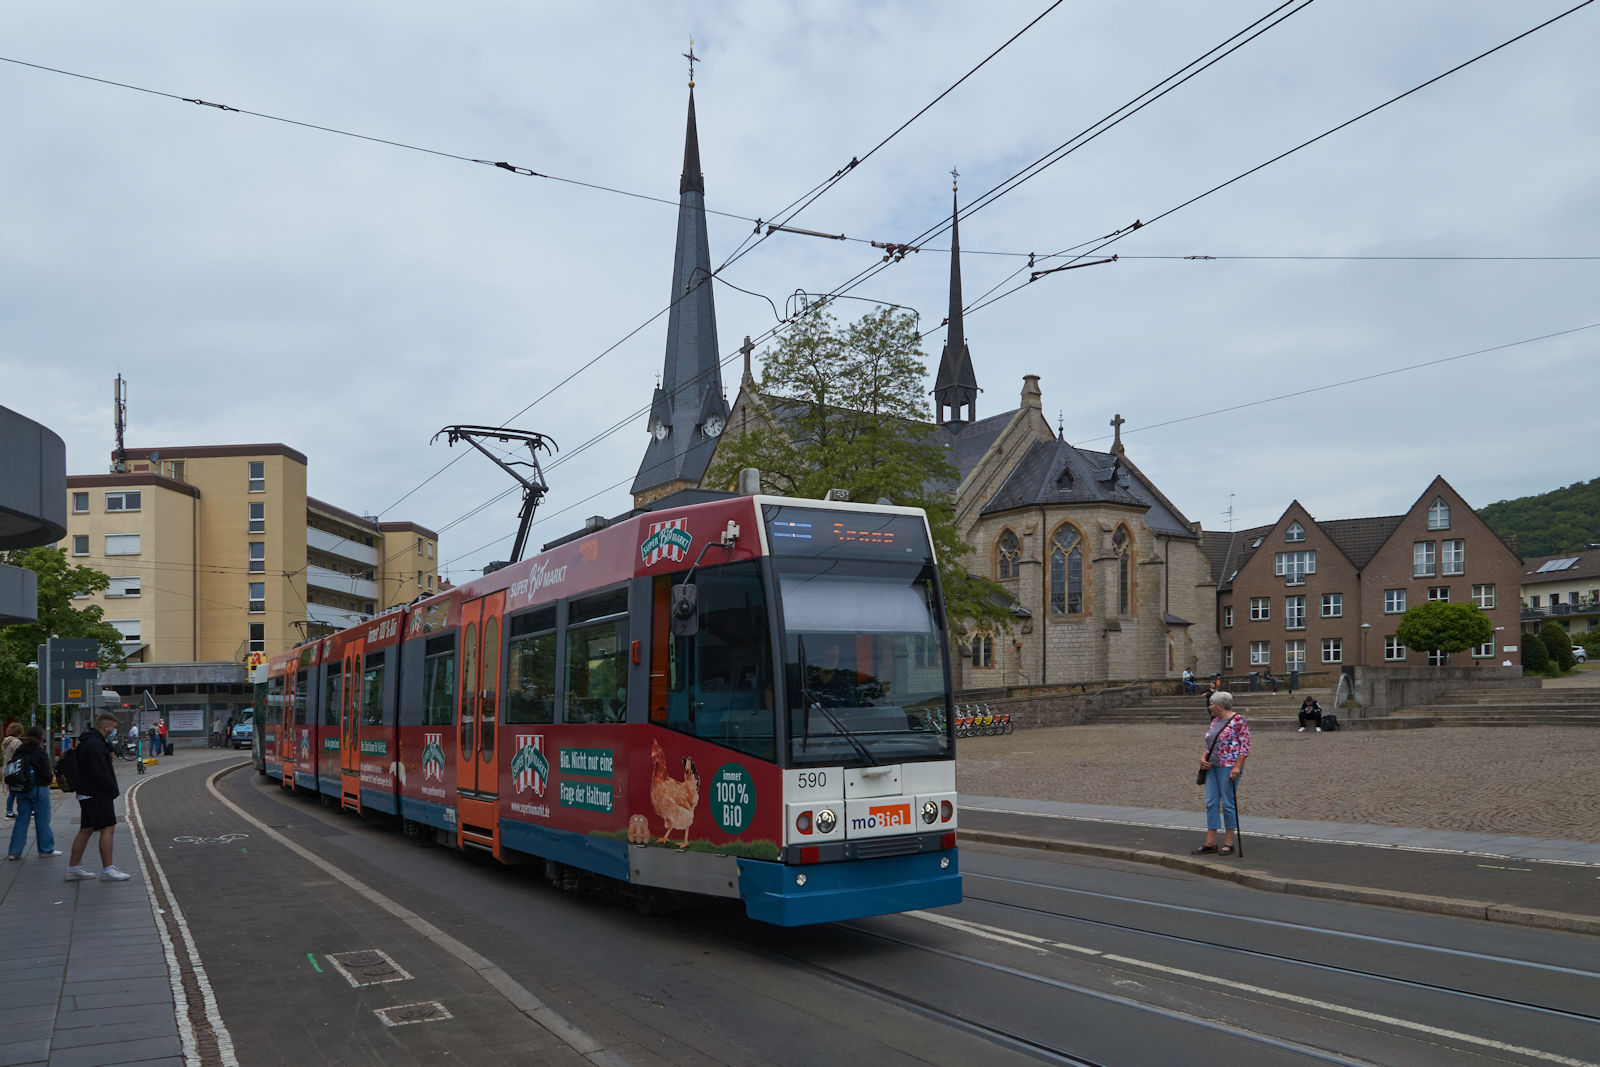 M8D 590 der Mobiel GmbH war am 16.05.2022 auf dem Weg nach Bielefeld Senne und durchfuhr die Brackweder Hauptstraße. In Kürze wird die Haltestelle Brackwede Kirche erreicht.